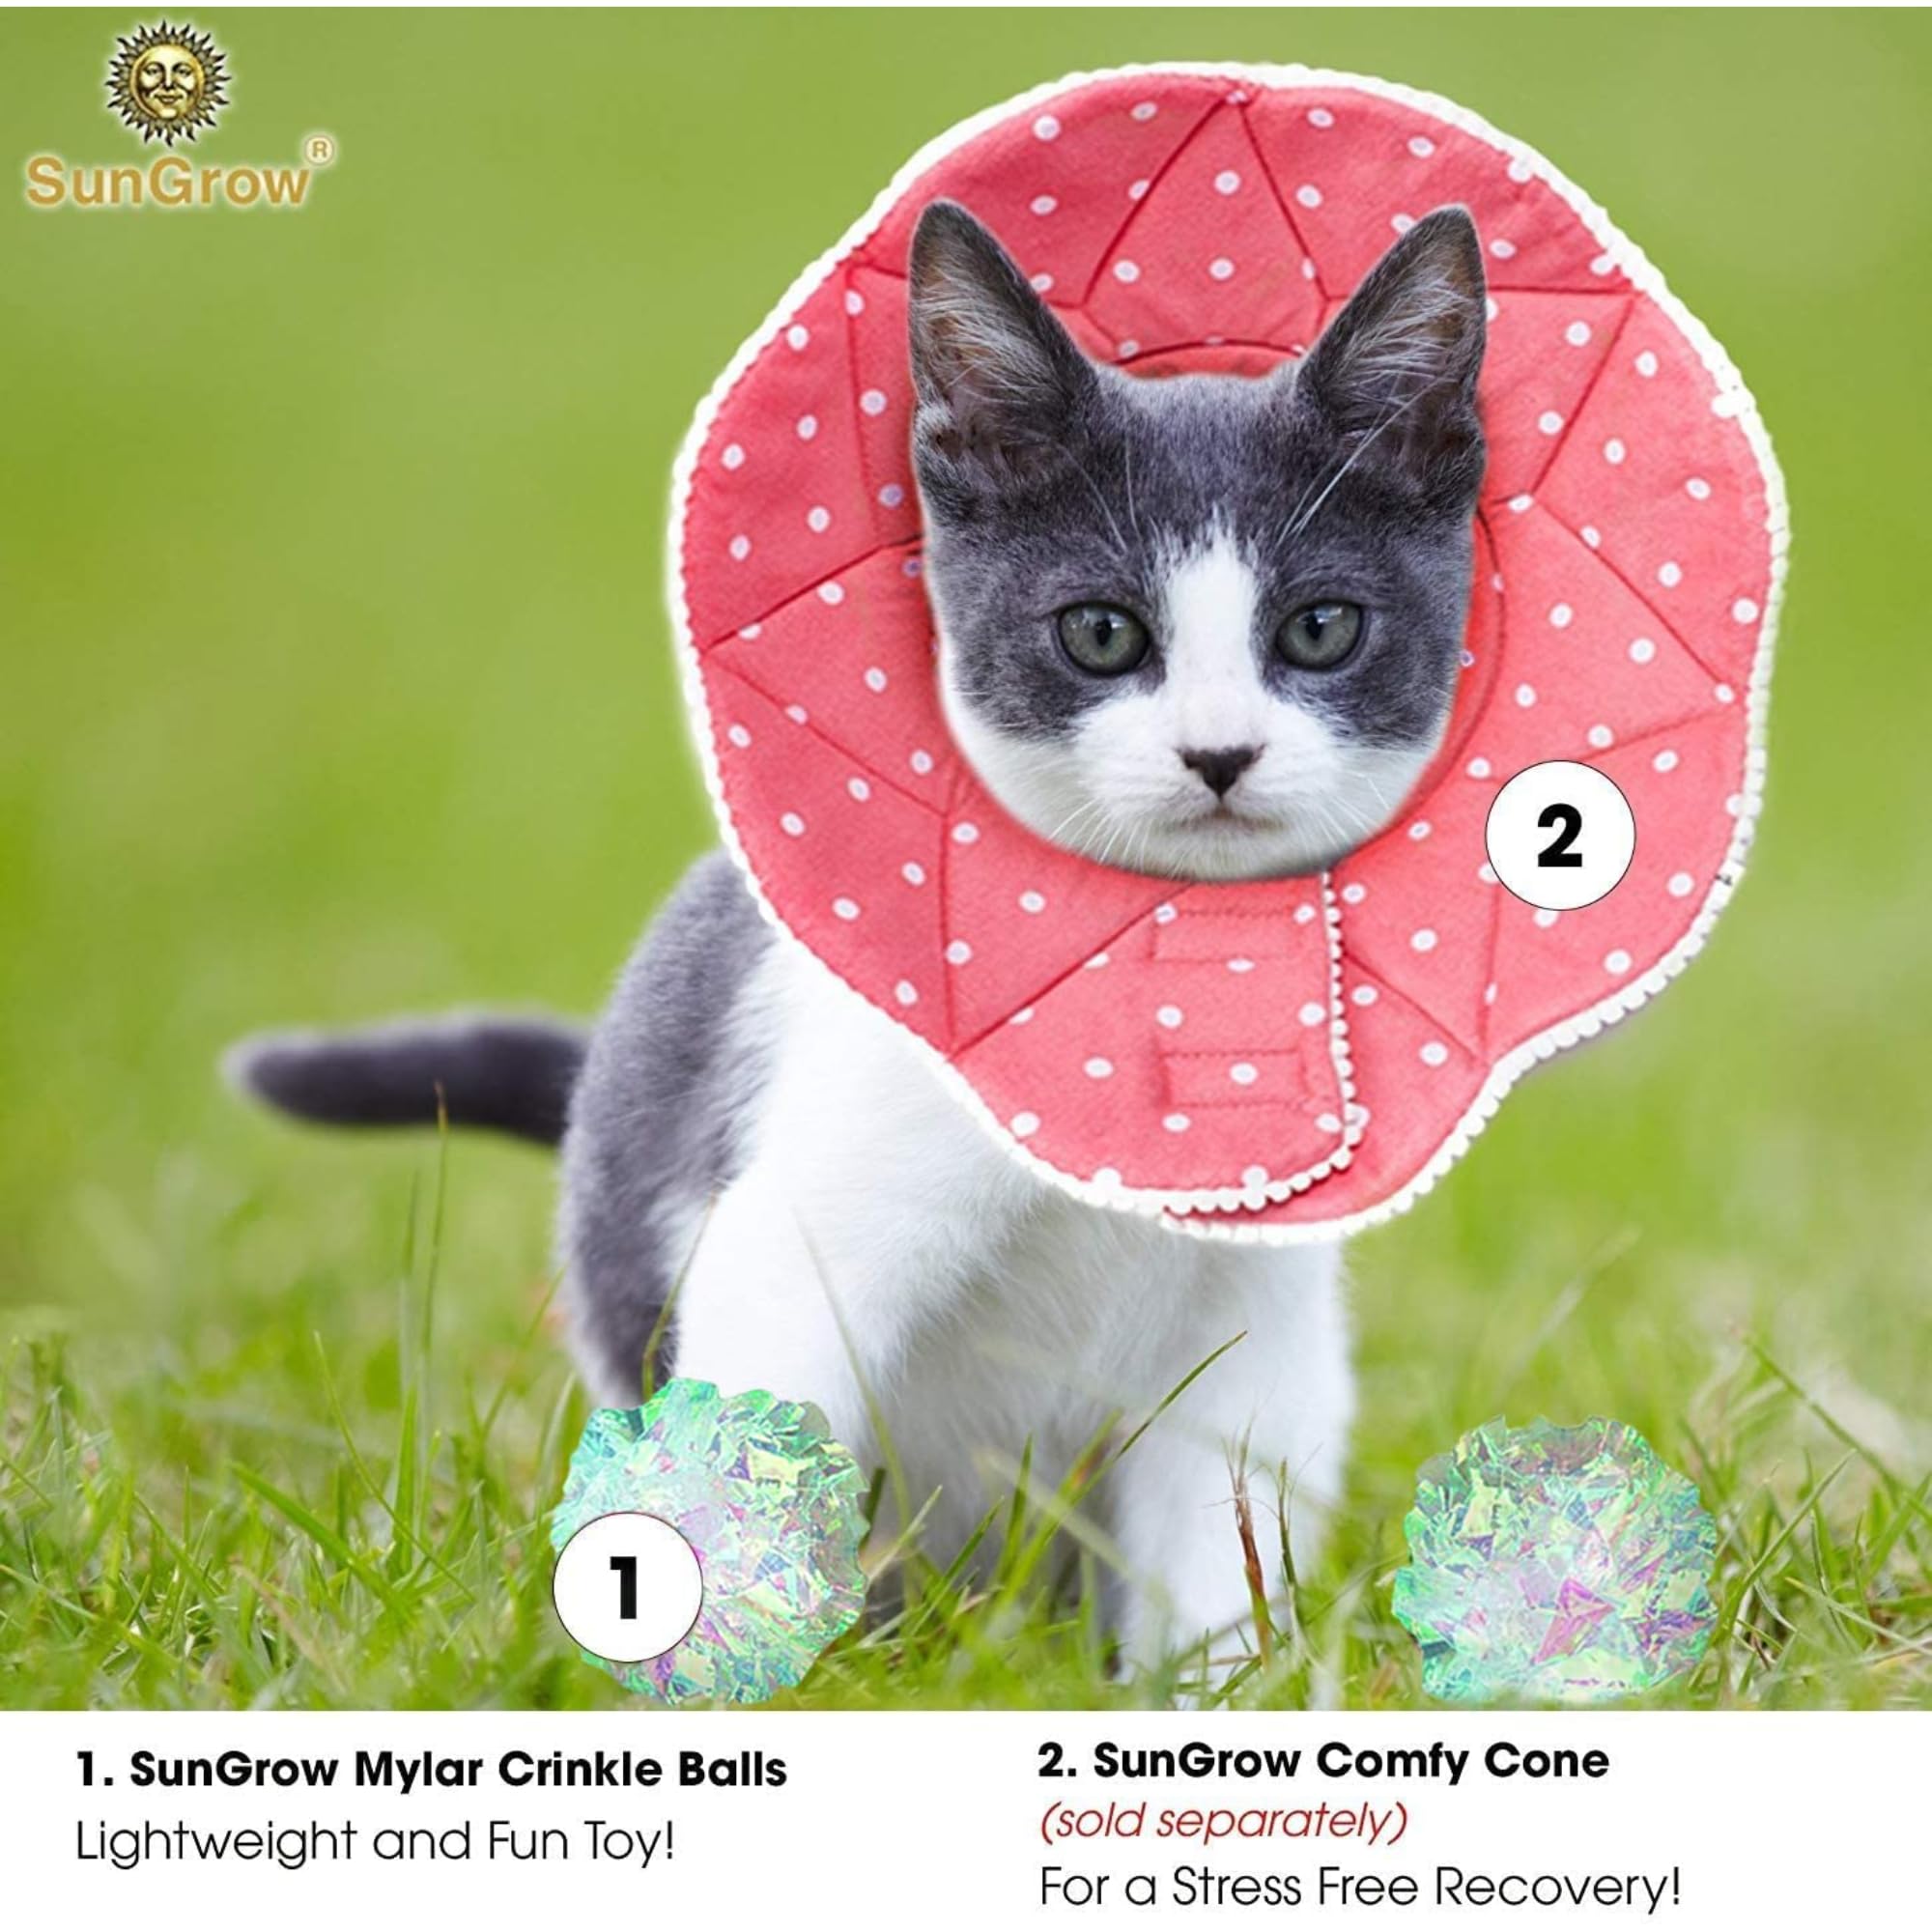 SunGrow Catクリンクルボール、屋内ペット用おもちゃ、軽量およびシルバー、子猫および成猫に最適、1.5〜2インチ、パックあたり12個